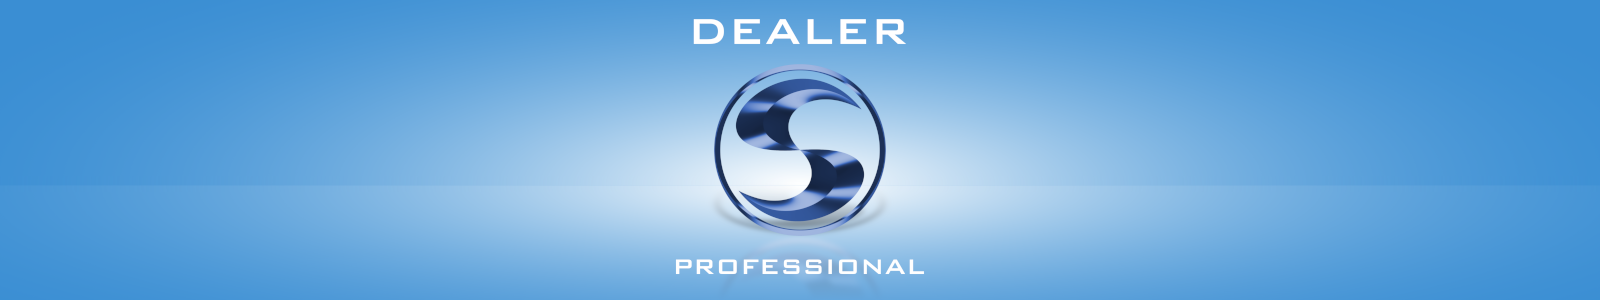 Dealer Professional - программа для продавцов окон, дверей и жалюзи